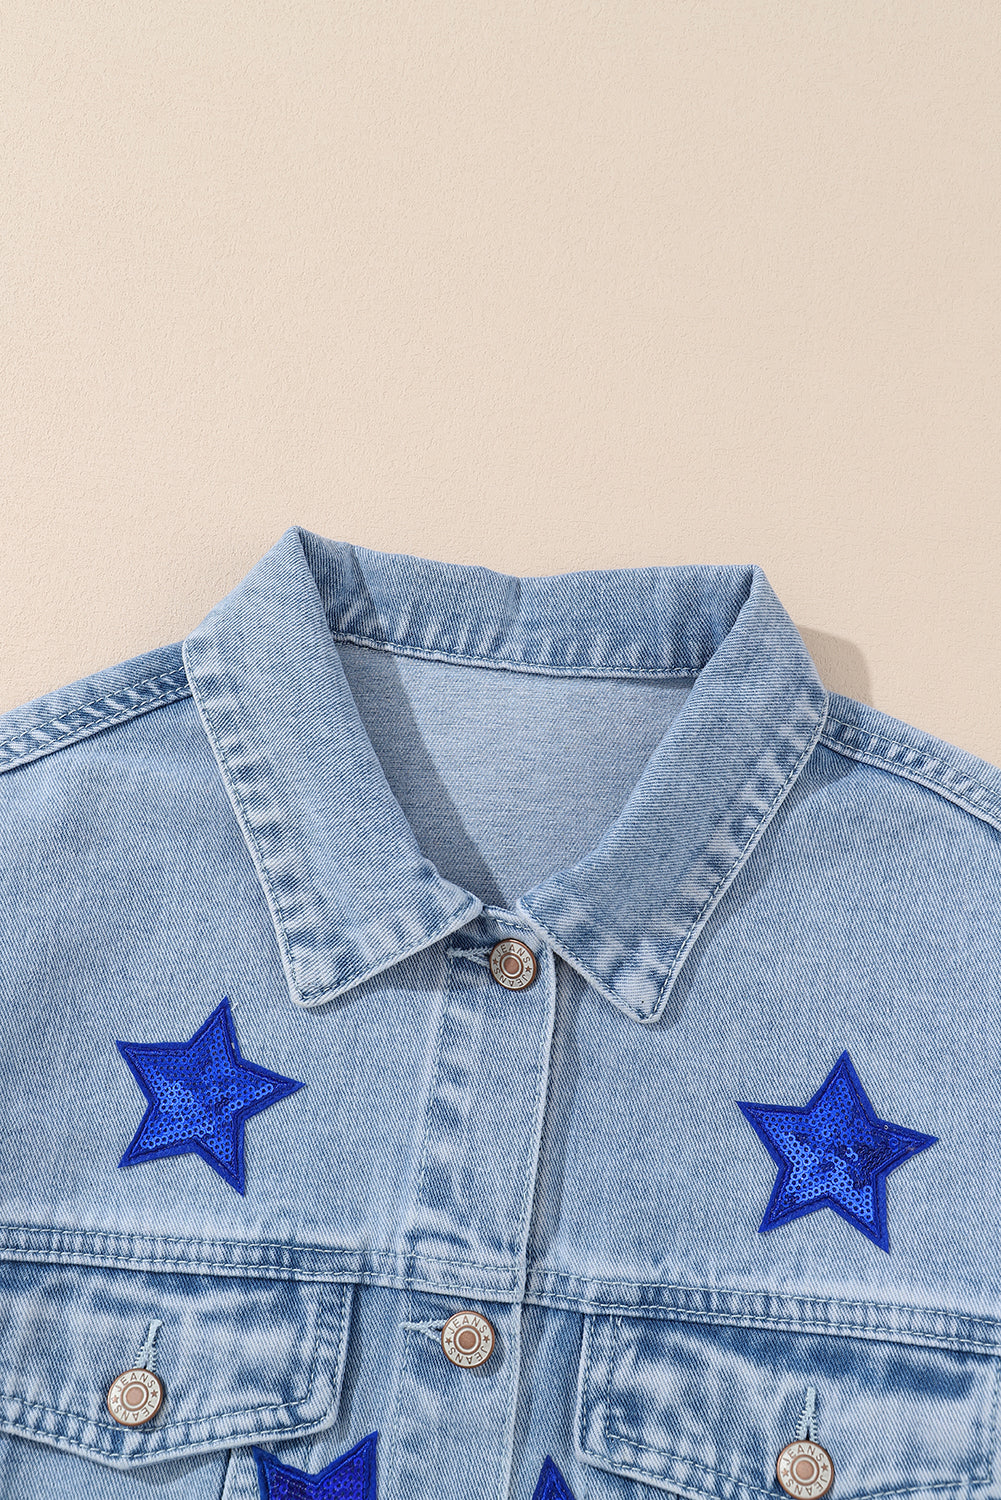 Bläuliche Jeansjacke mit Sternen und Pattentaschen und Pailletten